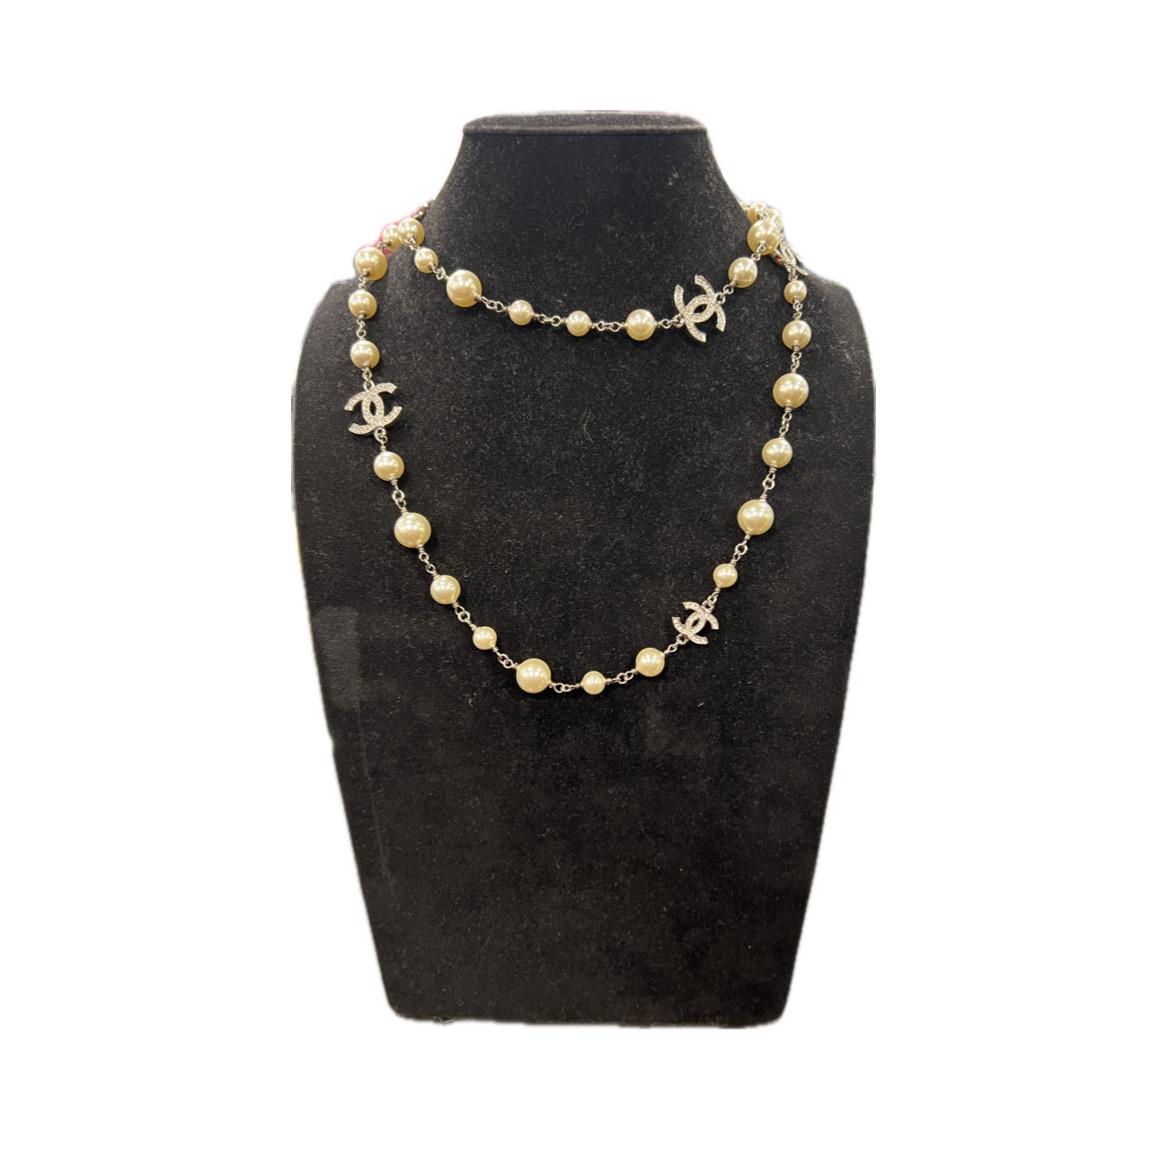 Diese in Frankreich gefertigte lange Chanel-Halskette ist aus silbernem Metall, Perlen und Strassstein CC.
Er ist beidseitig verwendbar. Can lang oder doppelt getragen werden.
Stempel auf der Schließe.
Gesamtlänge: 108 cm, CC in 2 Größen: 2 x 1,5 cm